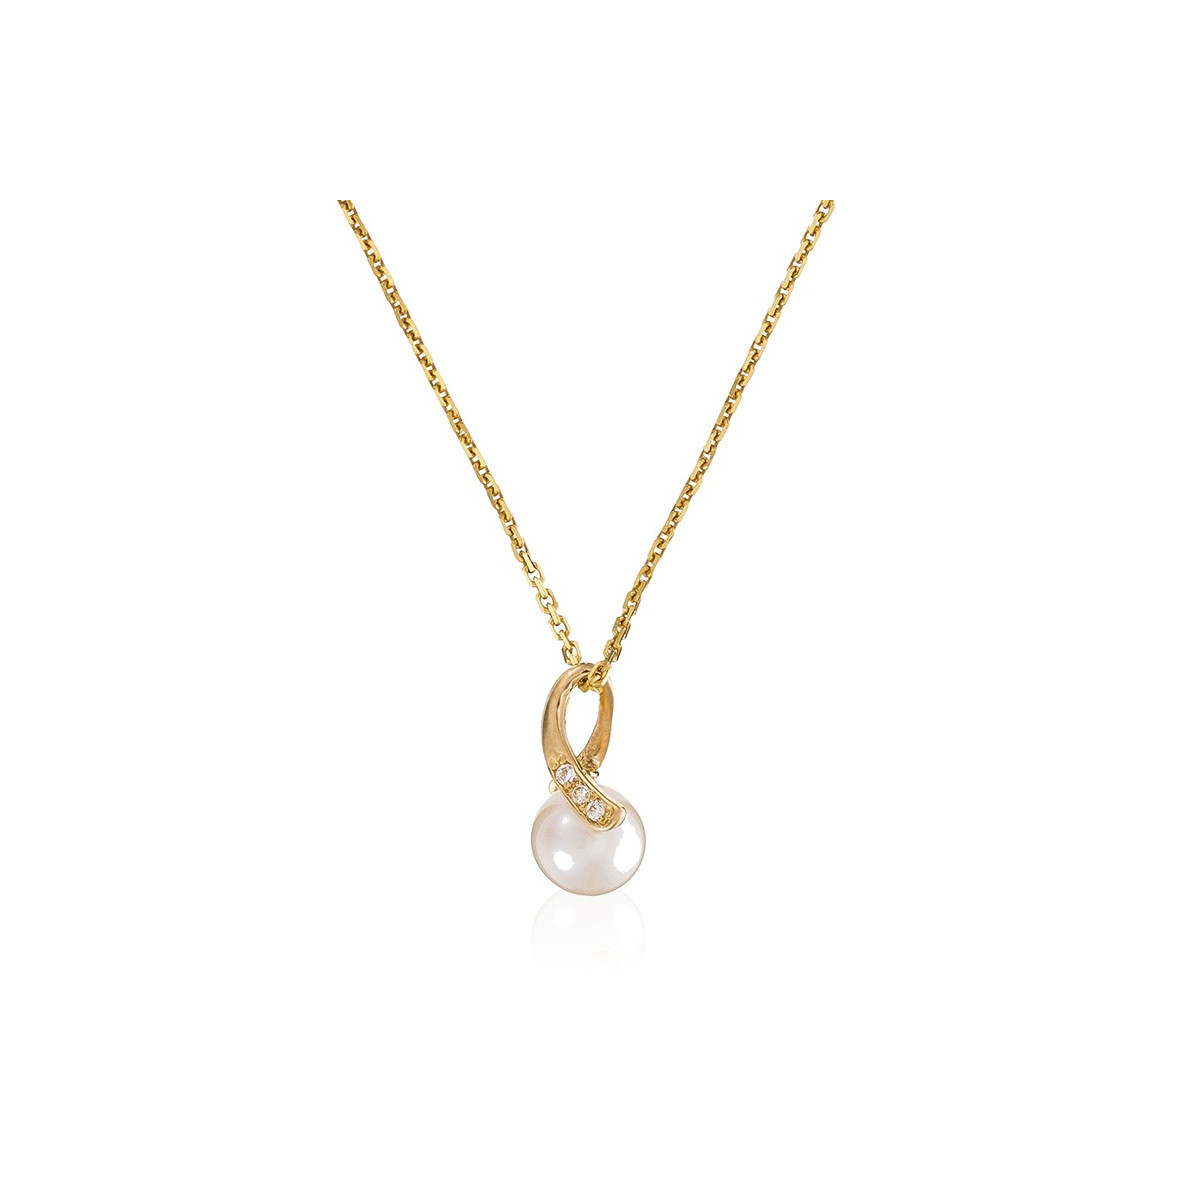 Pendentif Or Jaune, perle de culture blanche et oxydes de zirconium  "Phenix" + chaîne argent doré offerte